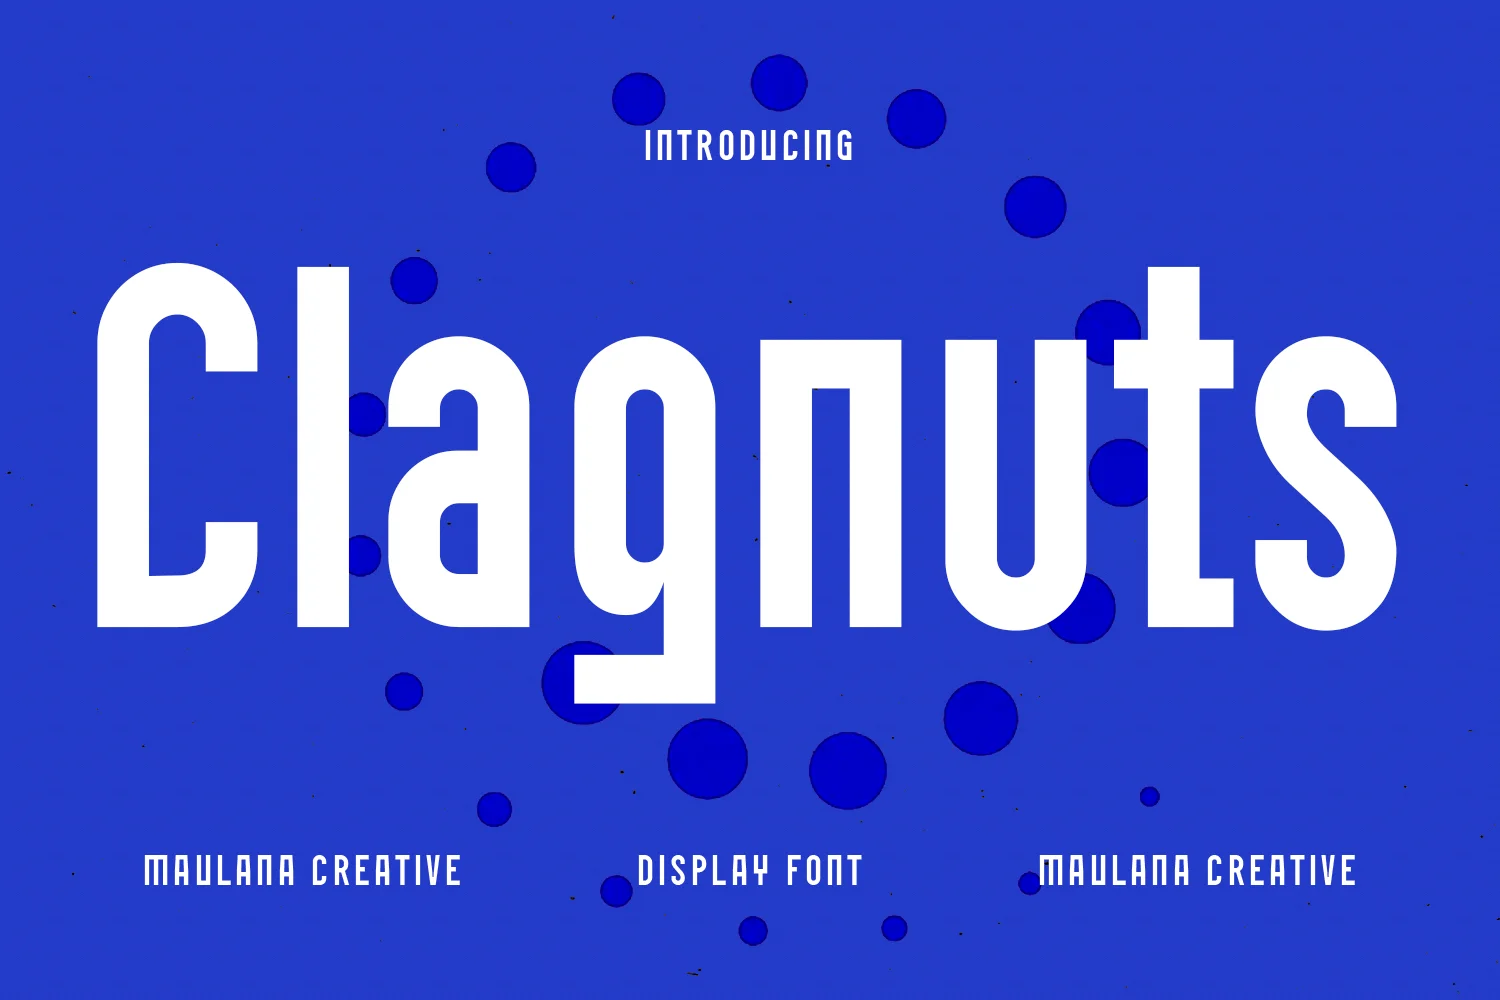 Clagnuts